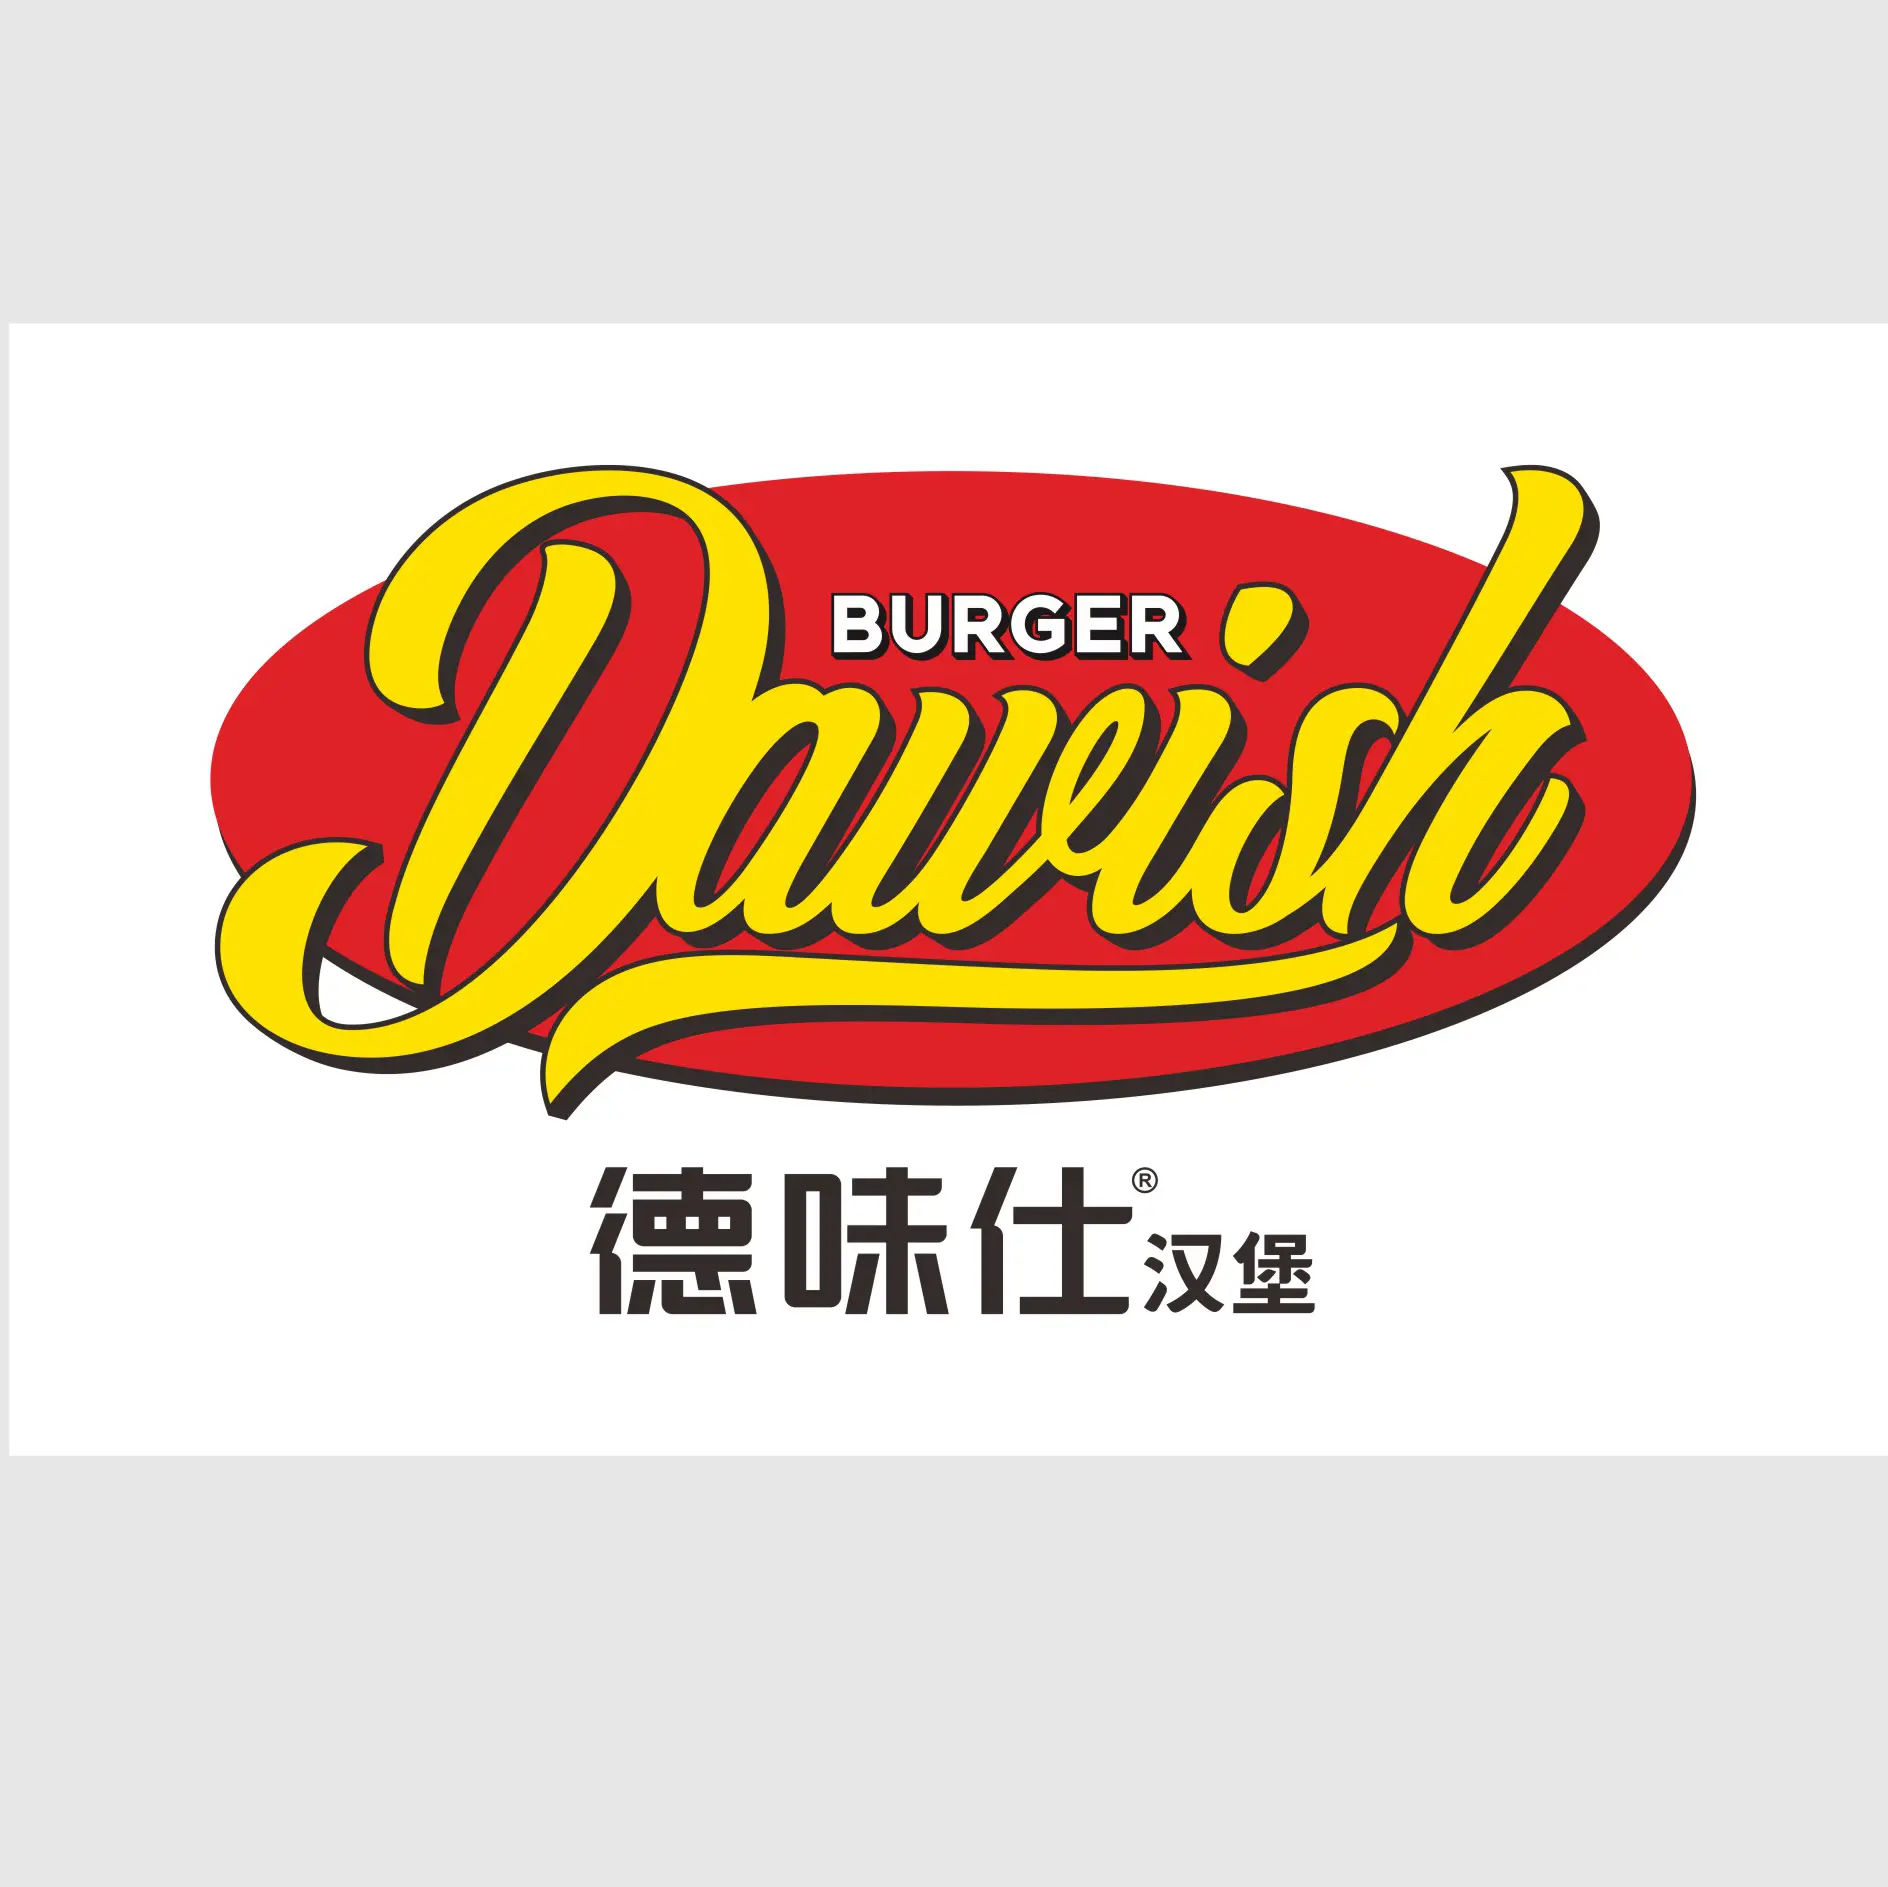 צעד אחד שירות אזורי כללי סוכן שירות מסעדה Dawish בורגר מסעדה בינלאומי זיכיון